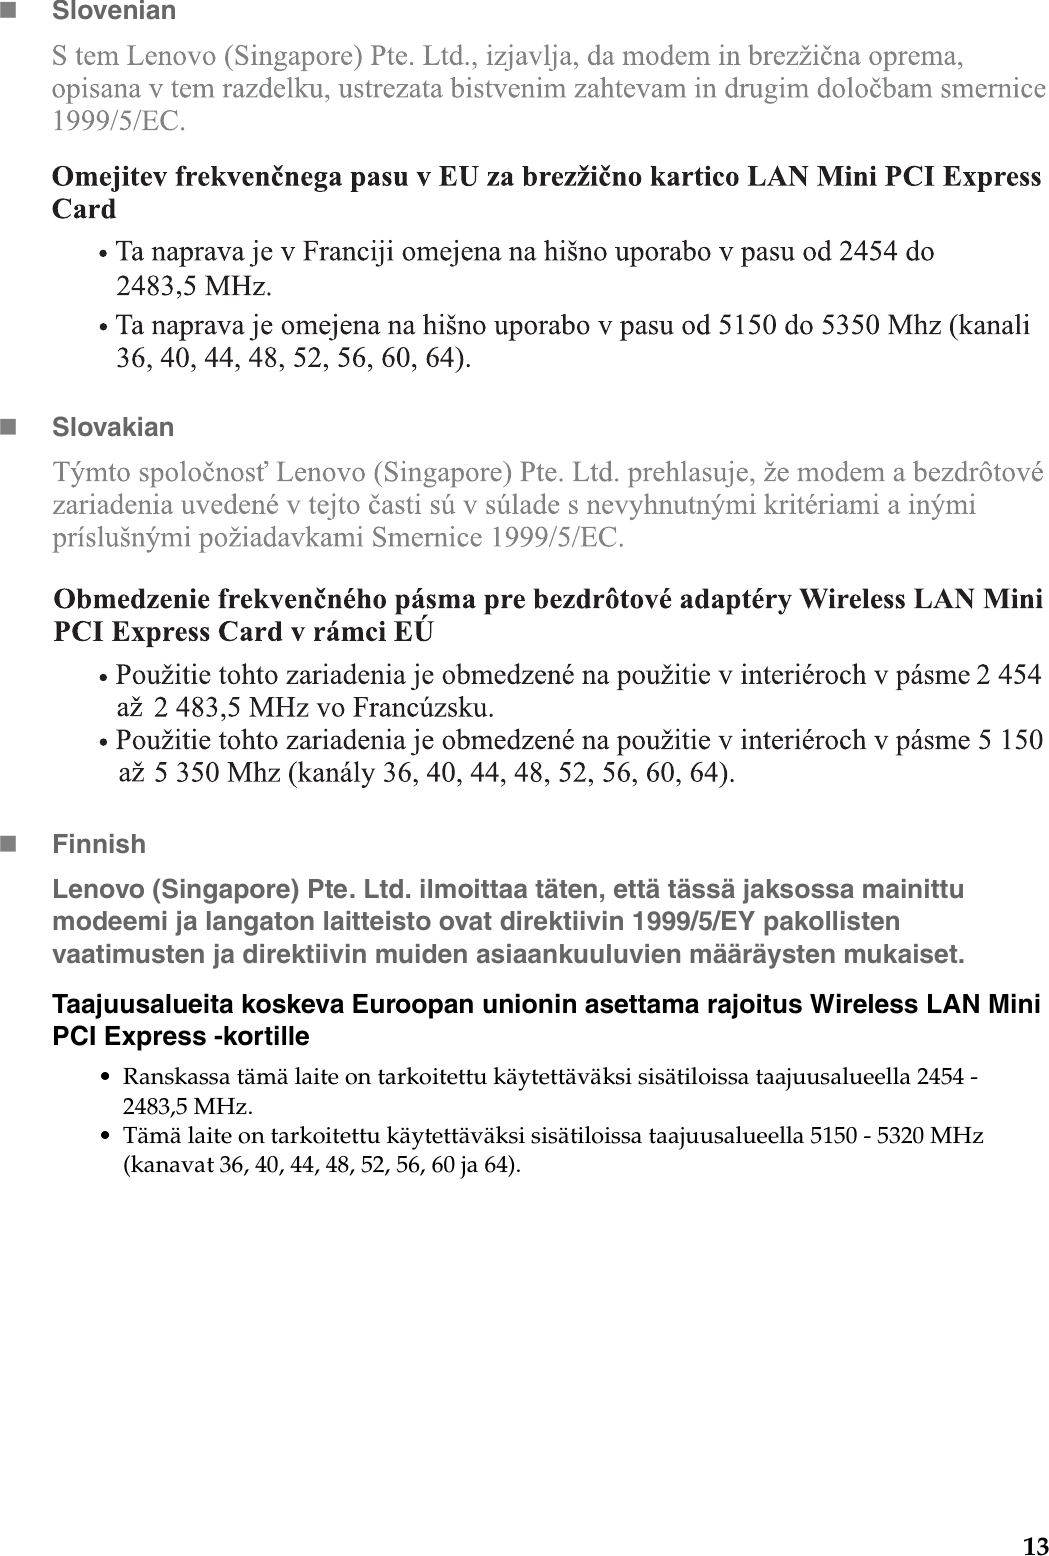 13SlovenianSlovakianFinnishLenovo (Singapore) Pte. Ltd. ilmoittaa täten, että tässä jaksossa mainittu modeemi ja langaton laitteisto ovat direktiivin 1999/5/EY pakollisten vaatimusten ja direktiivin muiden asiaankuuluvien määräysten mukaiset.Taajuusalueita koskeva Euroopan unionin asettama rajoitus Wireless LAN Mini PCI Express -kortille• Ranskassa tämä laite on tarkoitettu käytettäväksi sisätiloissa taajuusalueella 2454 - 2483,5 MHz.• Tämä laite on tarkoitettu käytettäväksi sisätiloissa taajuusalueella 5150 - 5320 MHz (kanavat 36, 40, 44, 48, 52, 56, 60 ja 64).